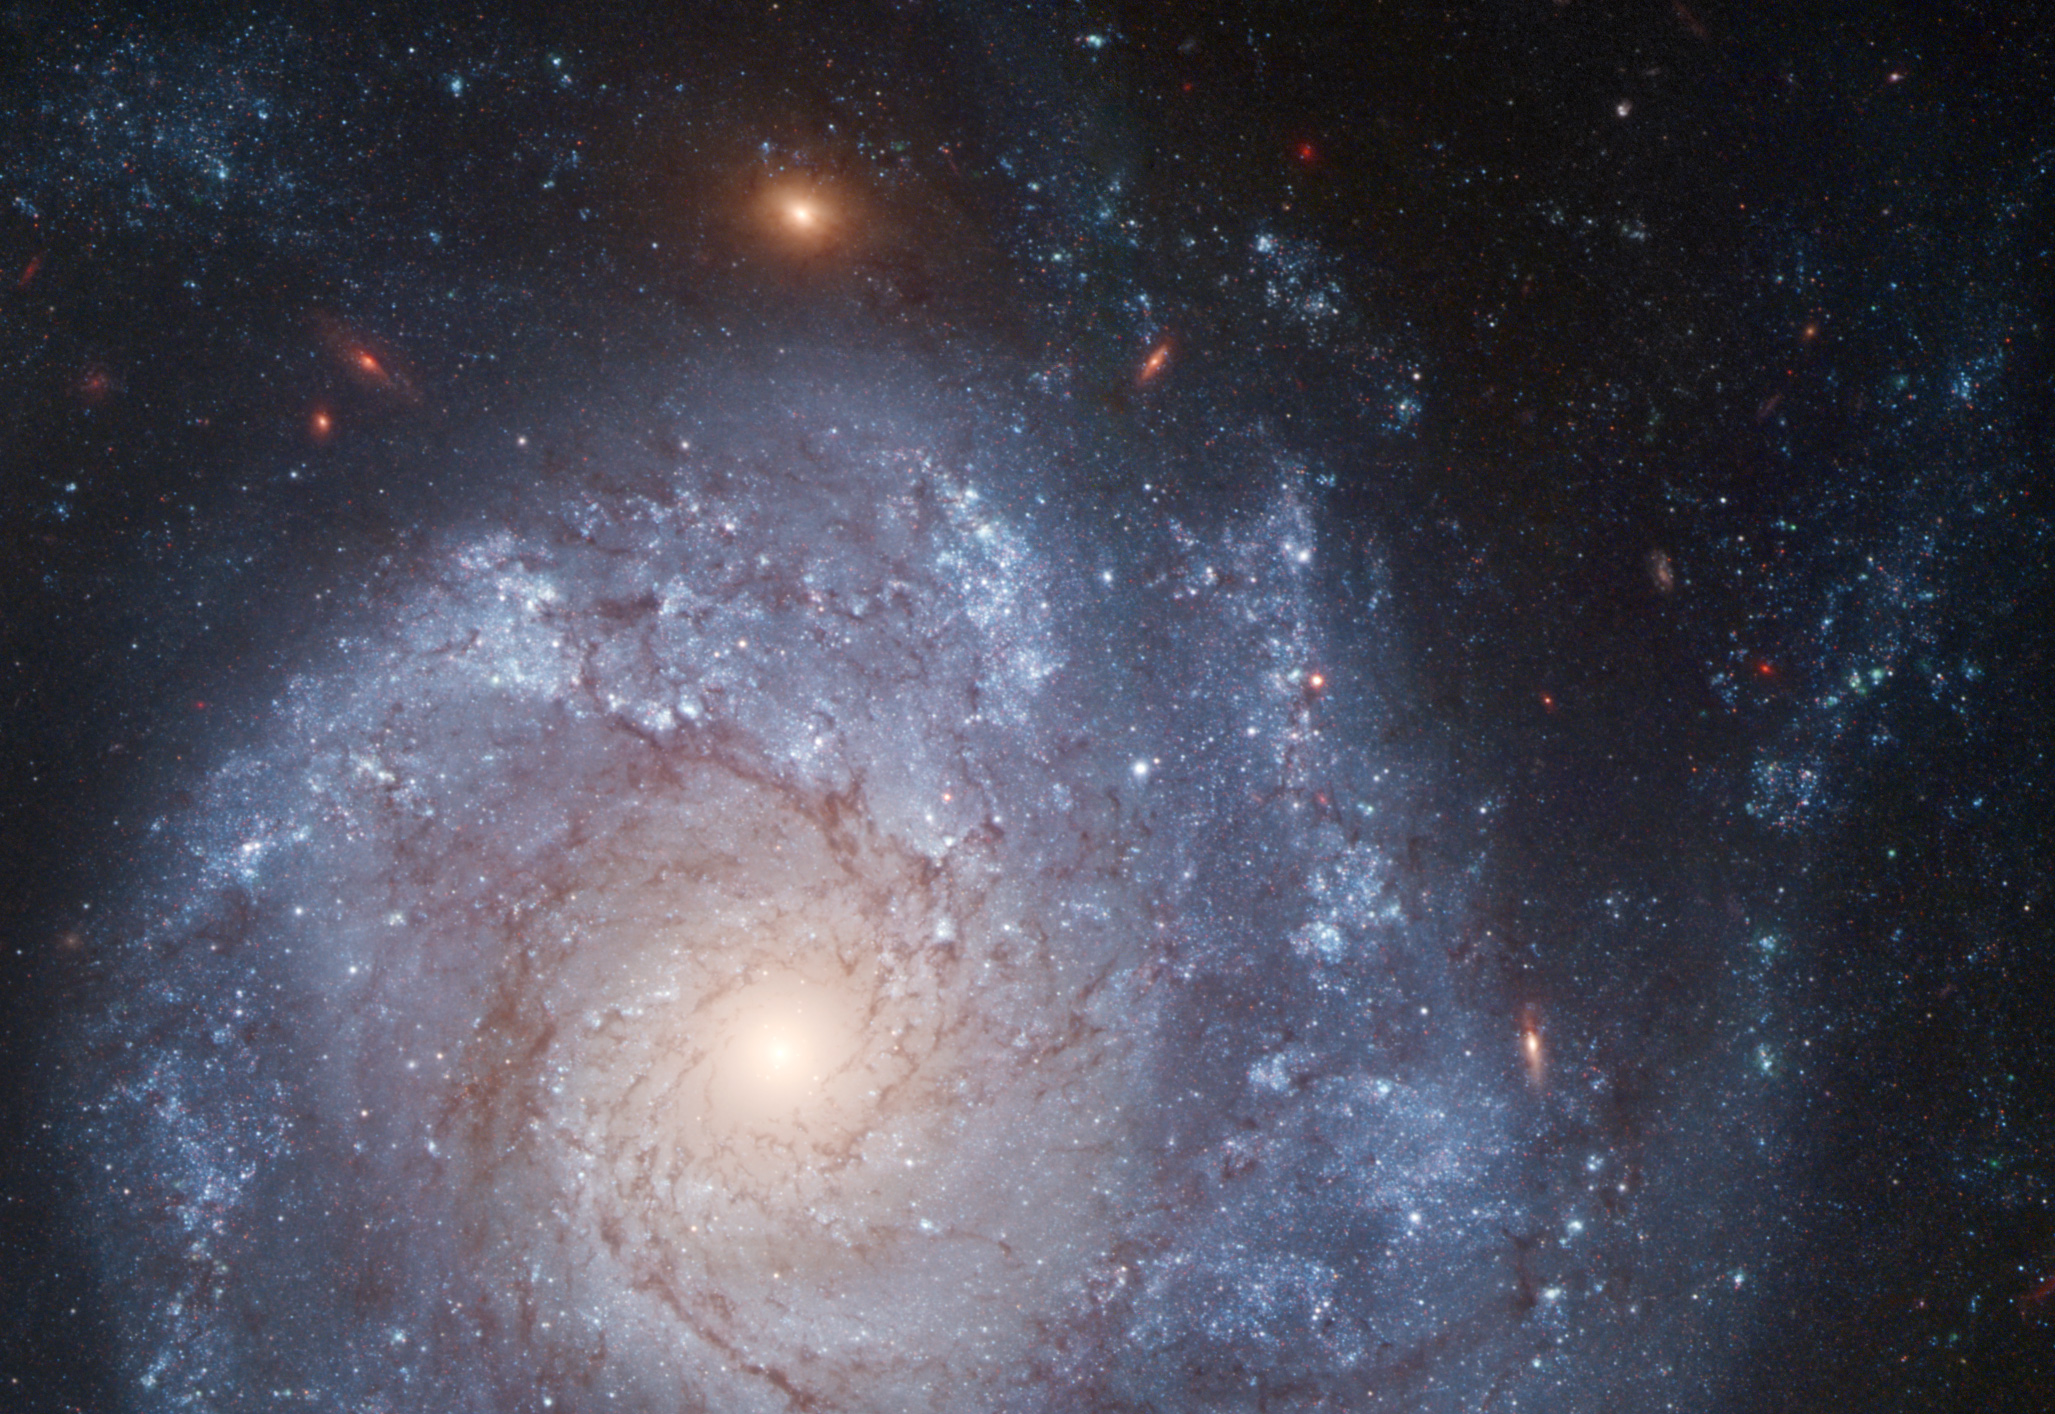 La galaxie spirale NGC 1309 vue par Hubble en fausses couleurs. Elle se trouve à environ 120 millions d'années-lumière de la Voie lactée. © Nasa, Esa